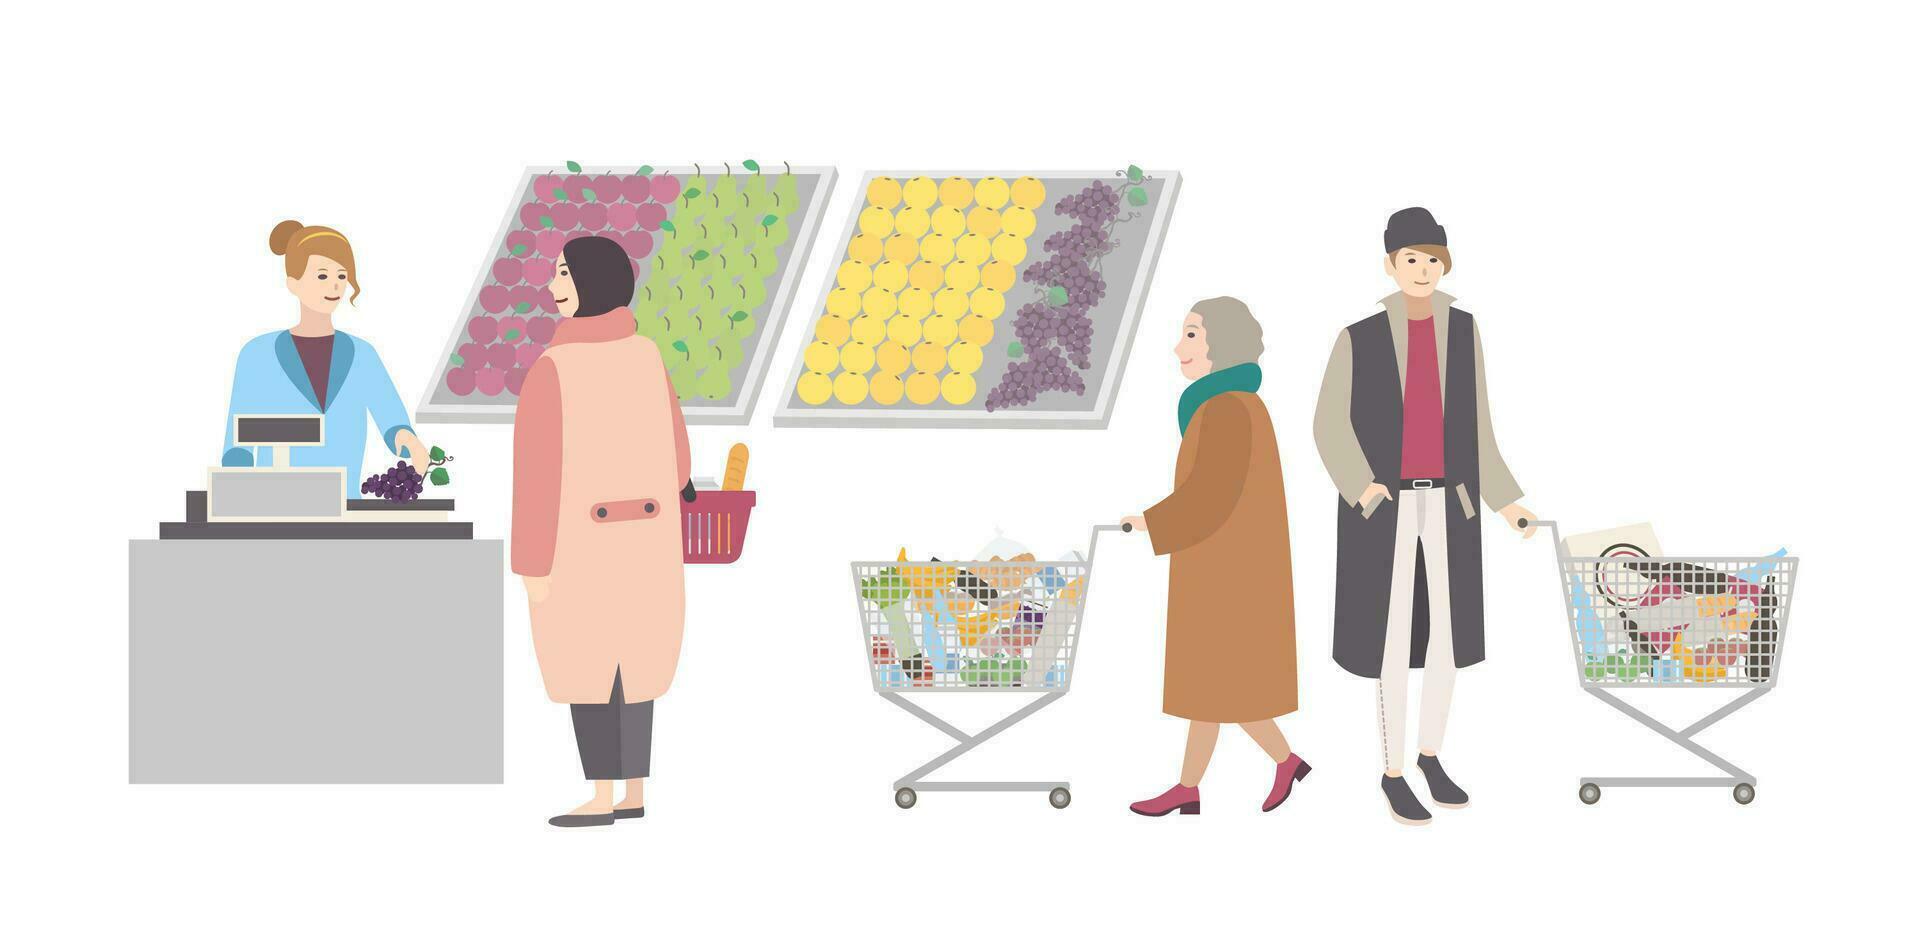 Konzept zum Supermarkt oder Geschäft. anders Menschen mit Einkaufen Wagen gewogen Waren im Gemüse Abteilung. Mädchen wiegt Einkäufe. bunt eben Vektor Illustration.